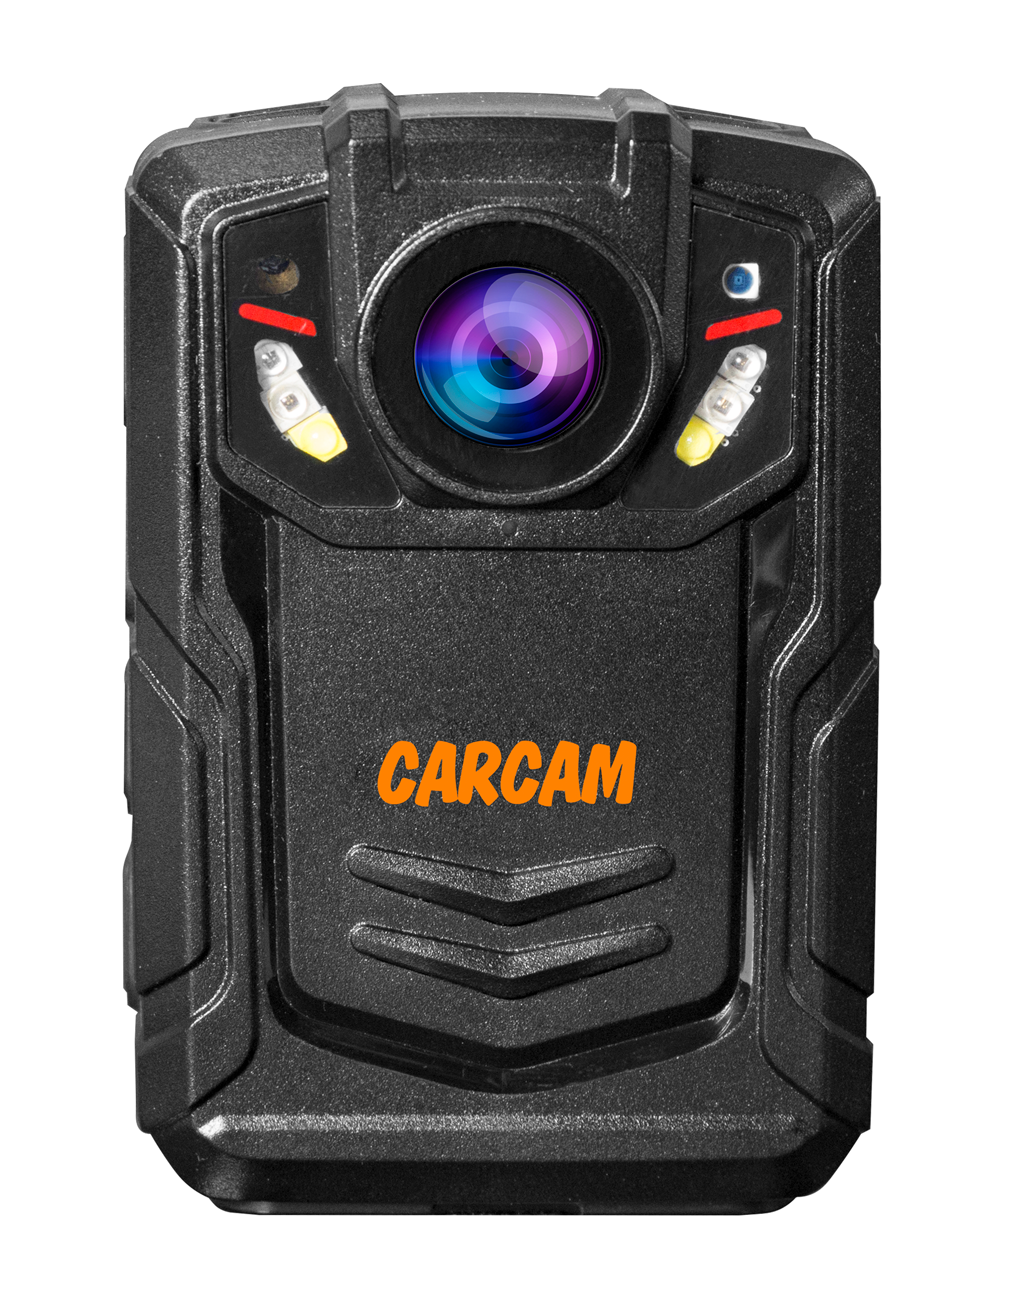 Персональный Quad HD видеорегистратор  CARCAM COMBAT 2S/4G 64GB персональный full hd видеорегистратор с функцией стабилизации изображения carcam combat 2s pro